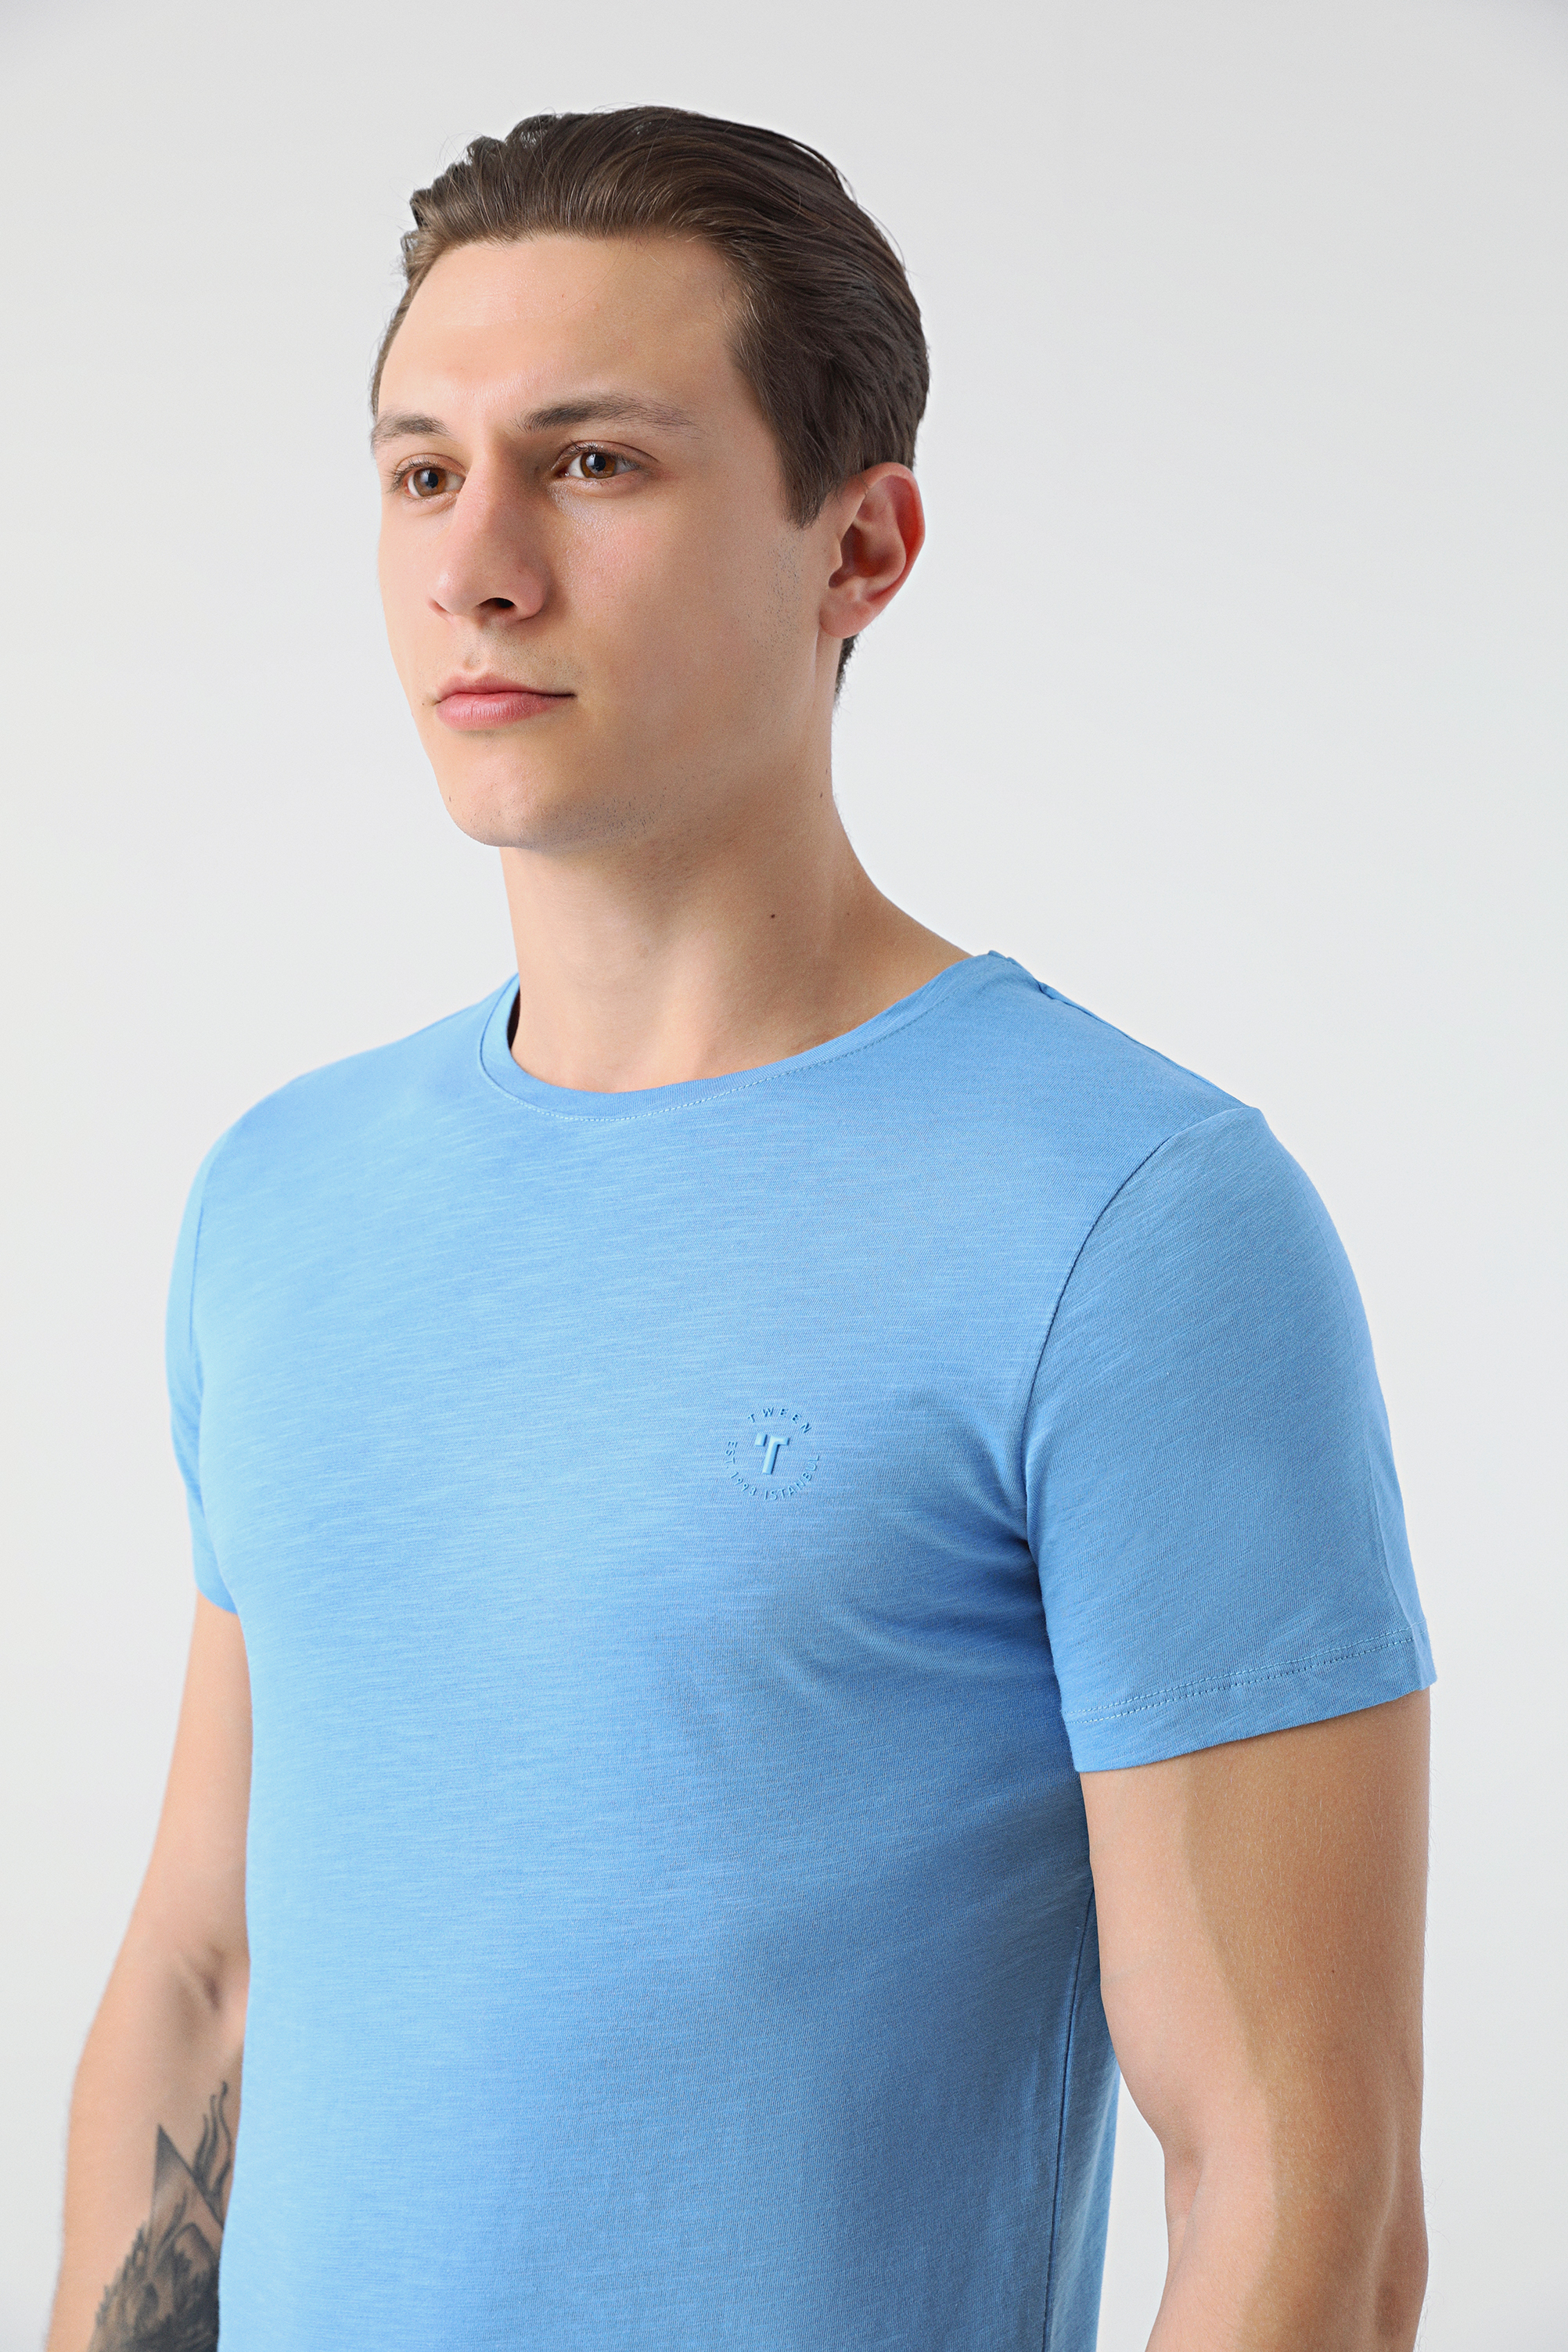 Damat Tween Tween Mavi Baskılı T-shirt. 2